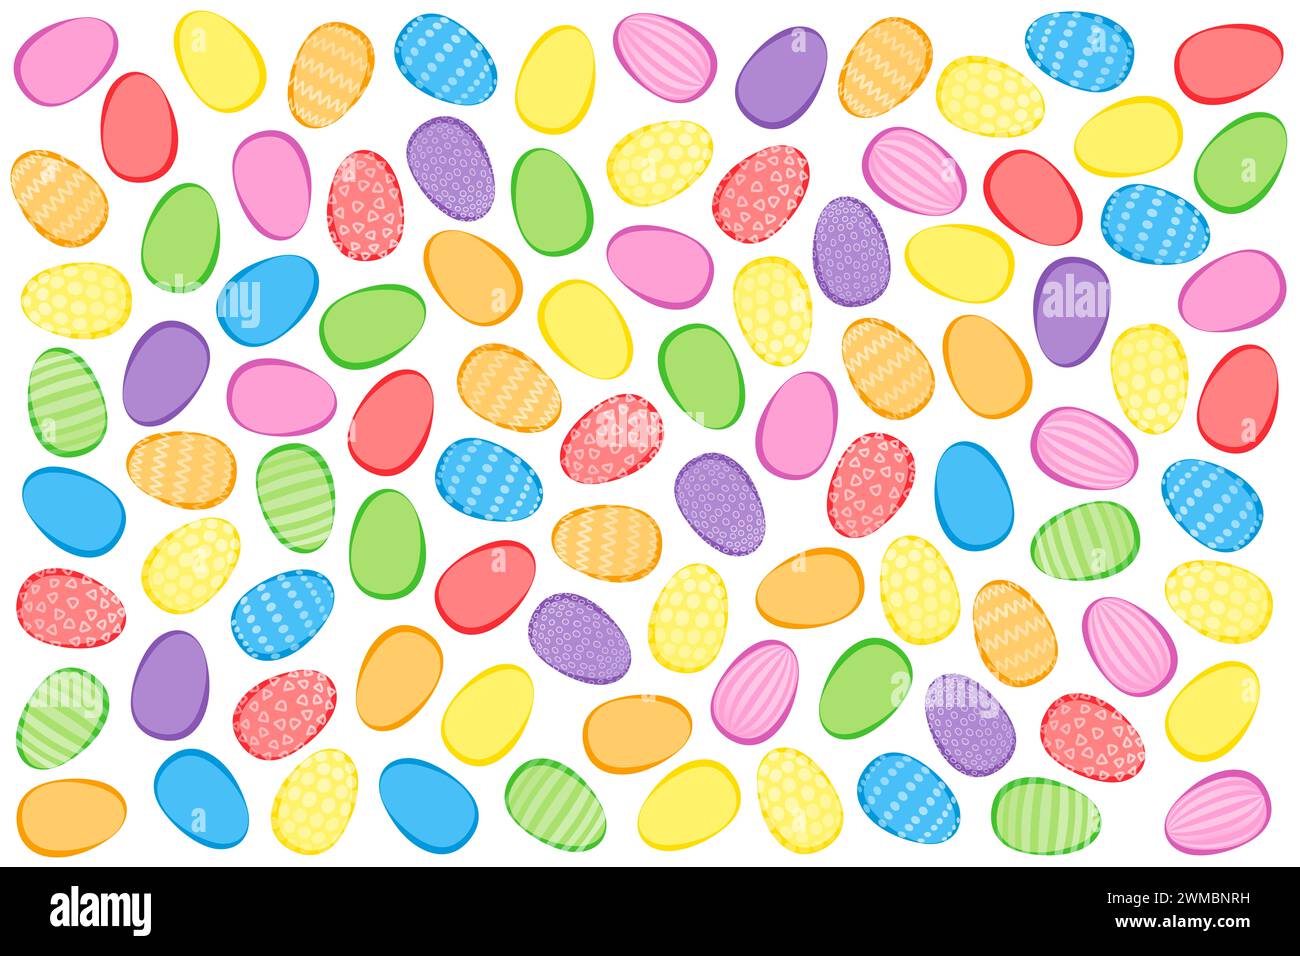 Farbenfroher Hintergrund für Ostereier. Zahlreiche ostereier, bunt und teilweise mit dekorativen Mustern, gekreuzt und zufällig angeordnet. Stockfoto